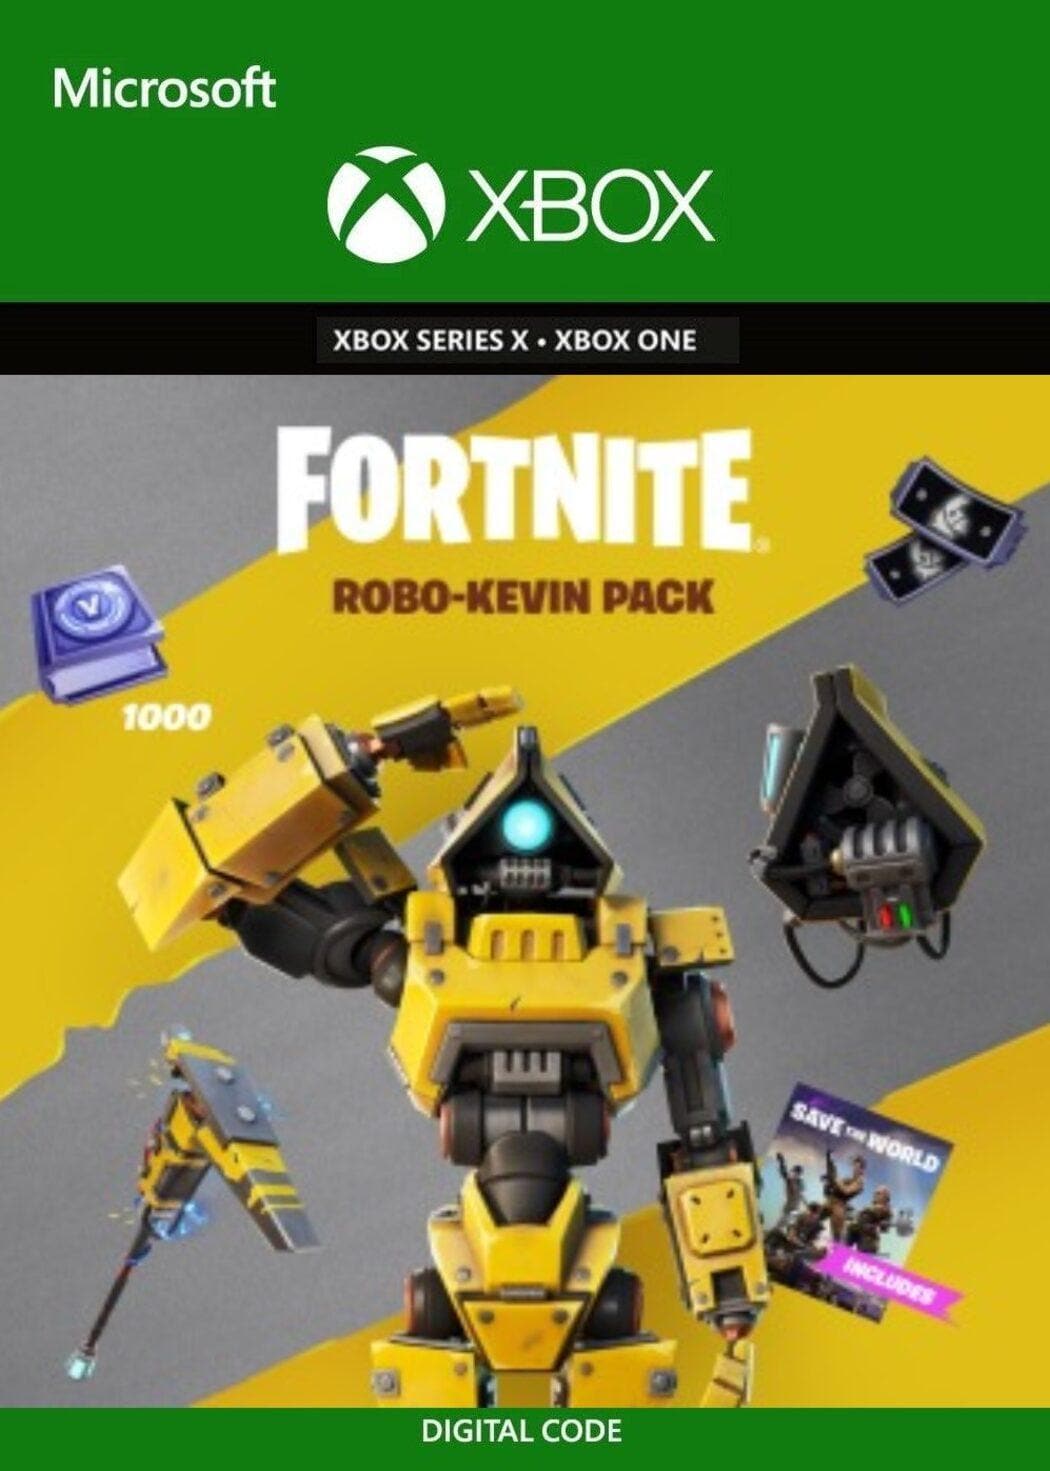 Fortnite: Robo-Kevin Pack - Xbox - EXON - גיימינג ותוכנות - משחקים ותוכנות למחשב ולאקס בוקס!